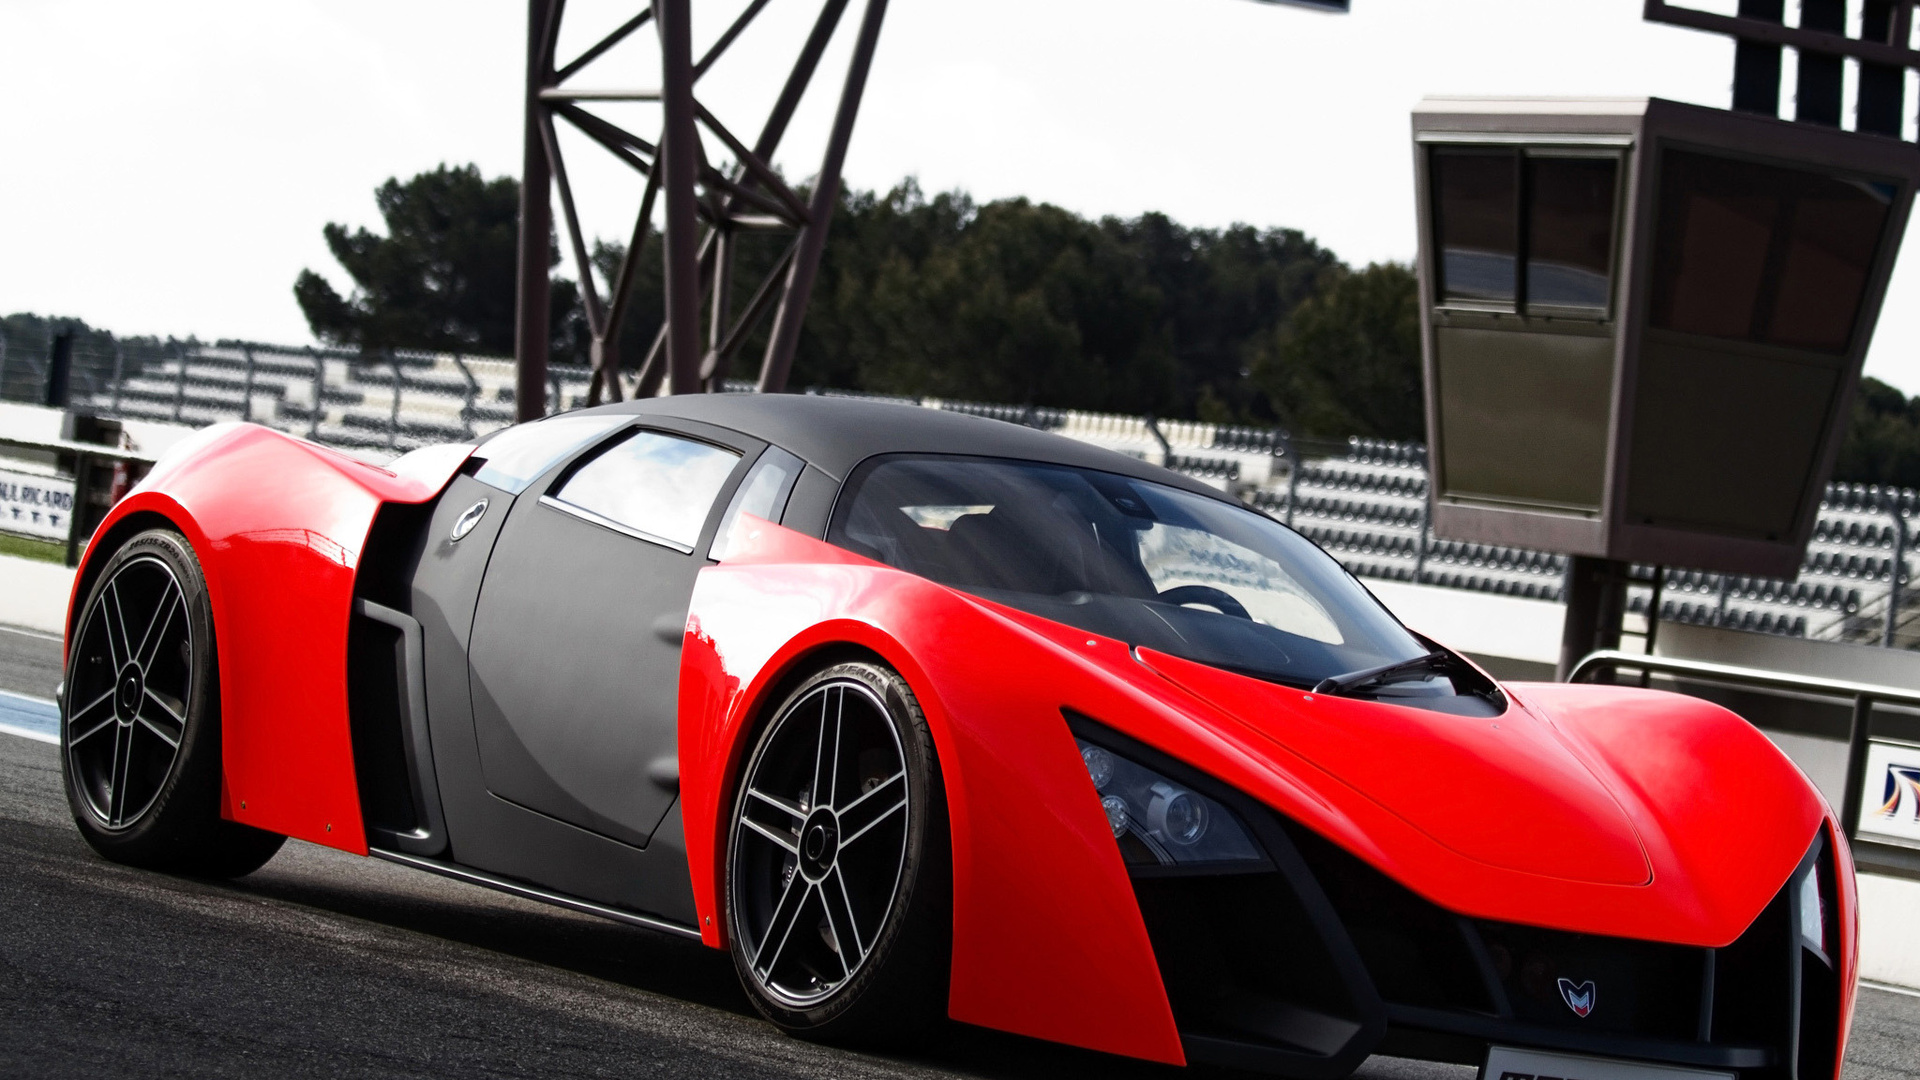 Marussia Red Sports Car 1080p HD Desktop Wallpaper